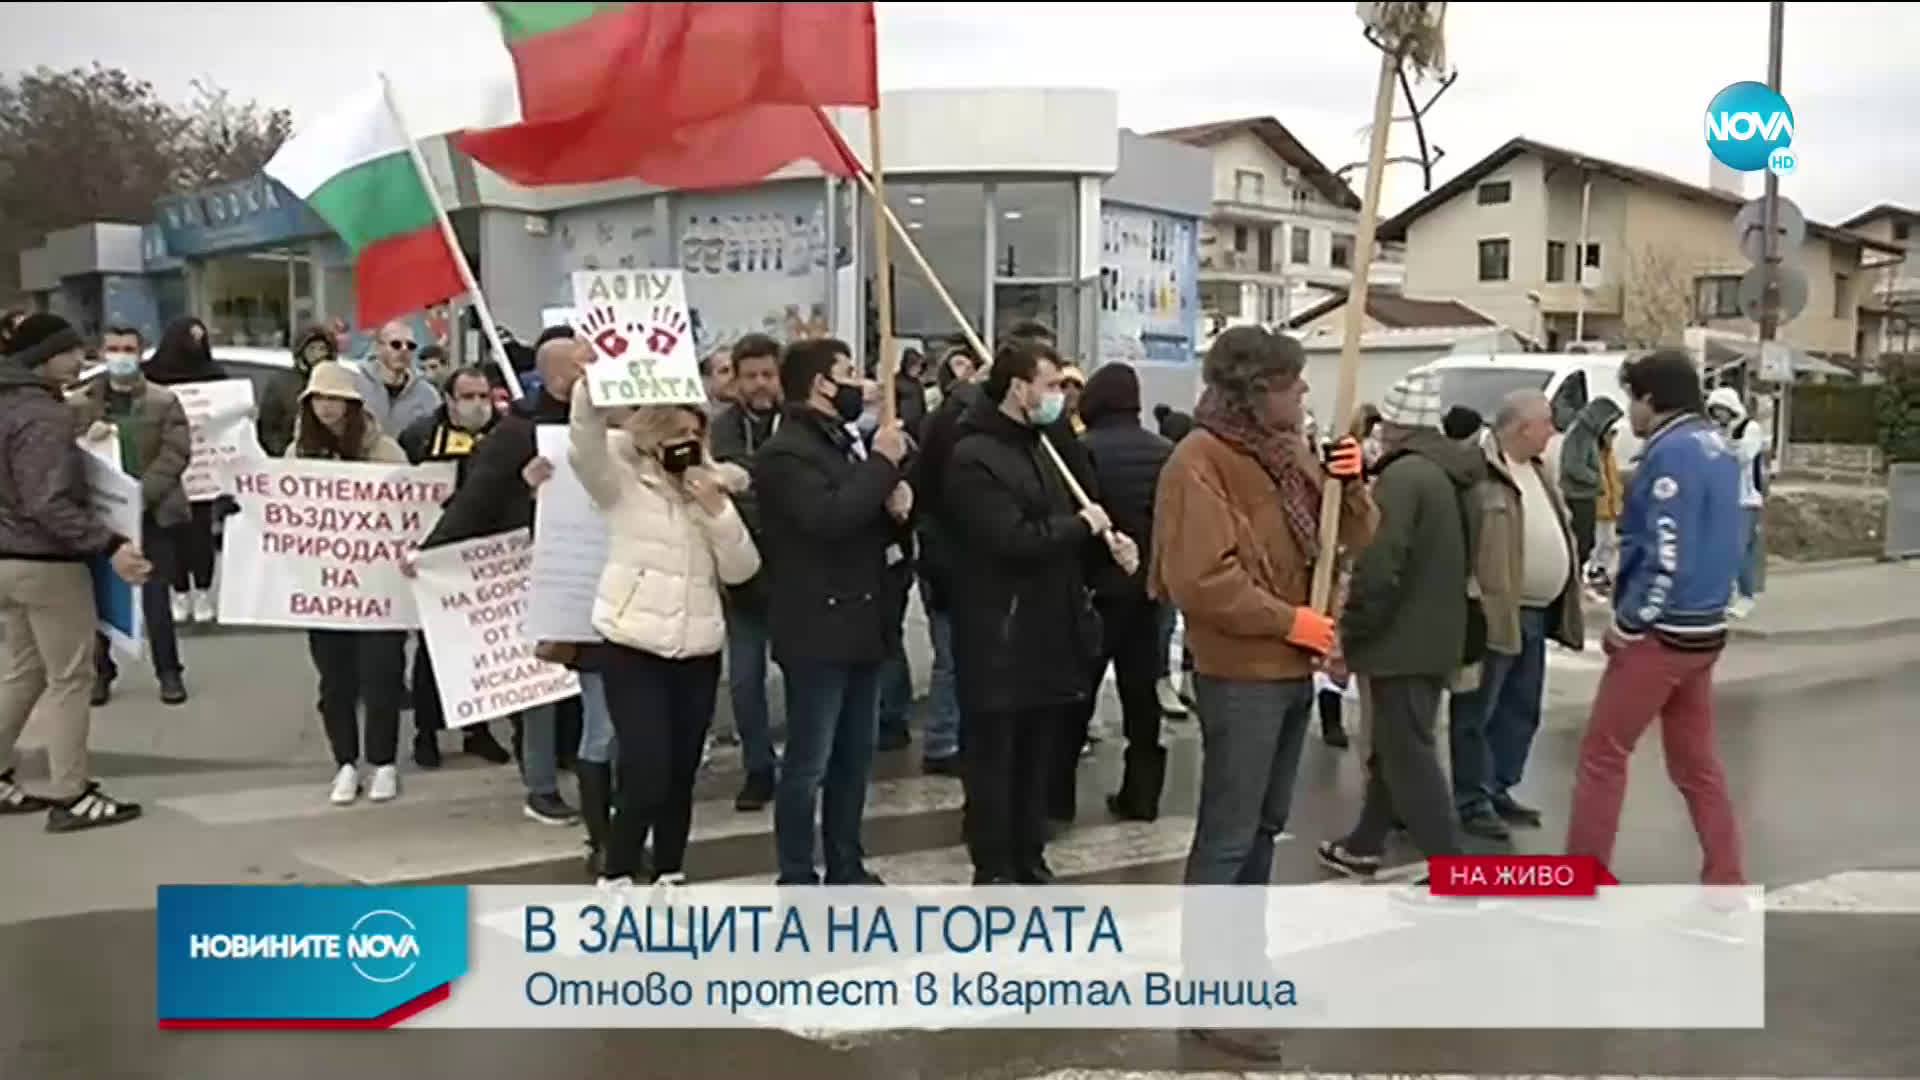 Отново протест във Варна в защита на гората